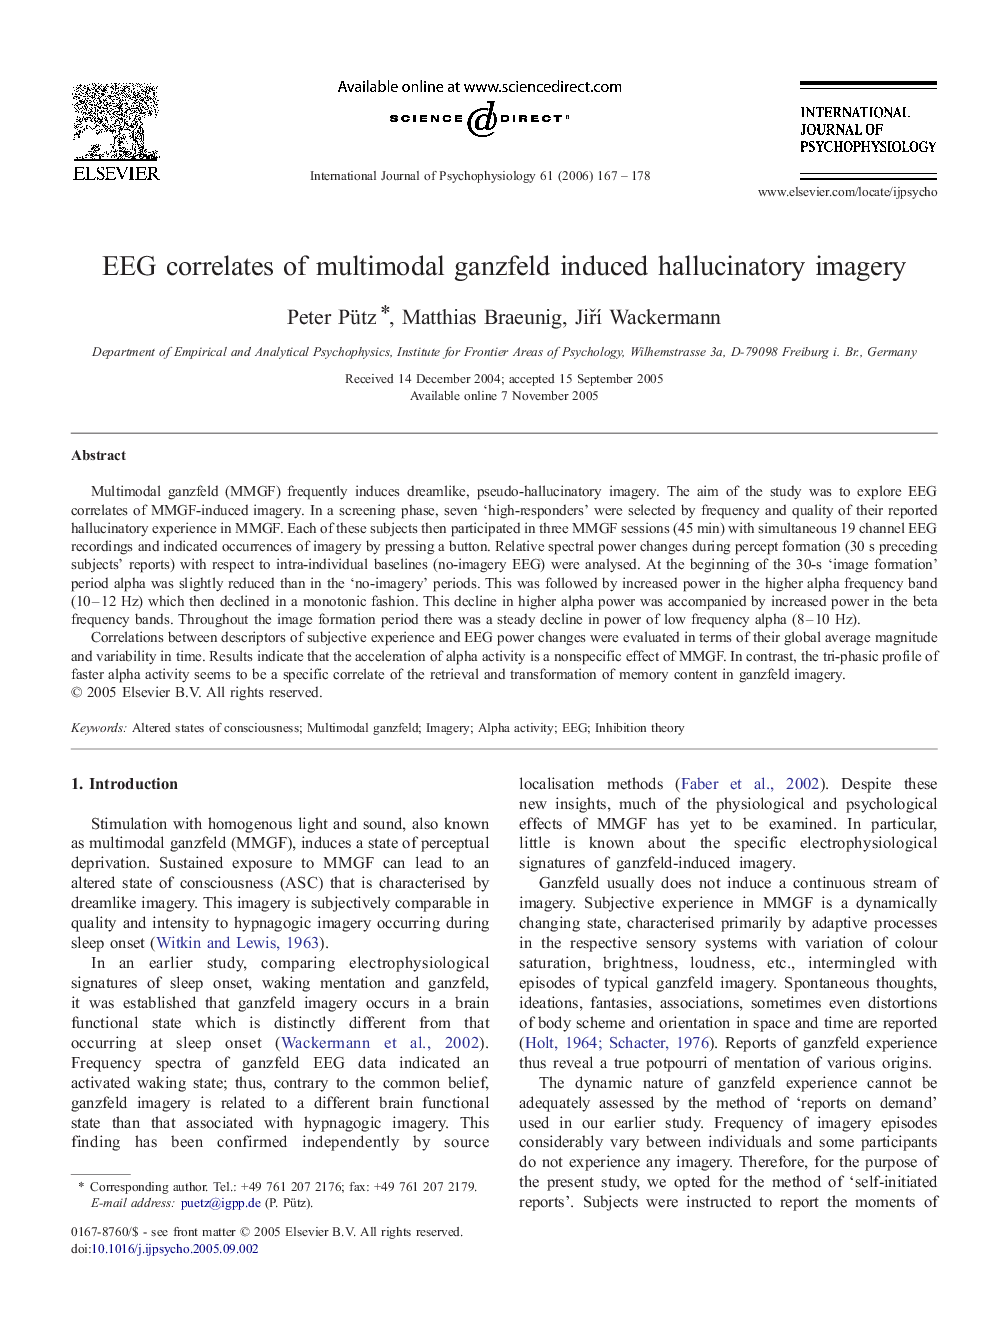 EEG correlates of multimodal ganzfeld induced hallucinatory imagery